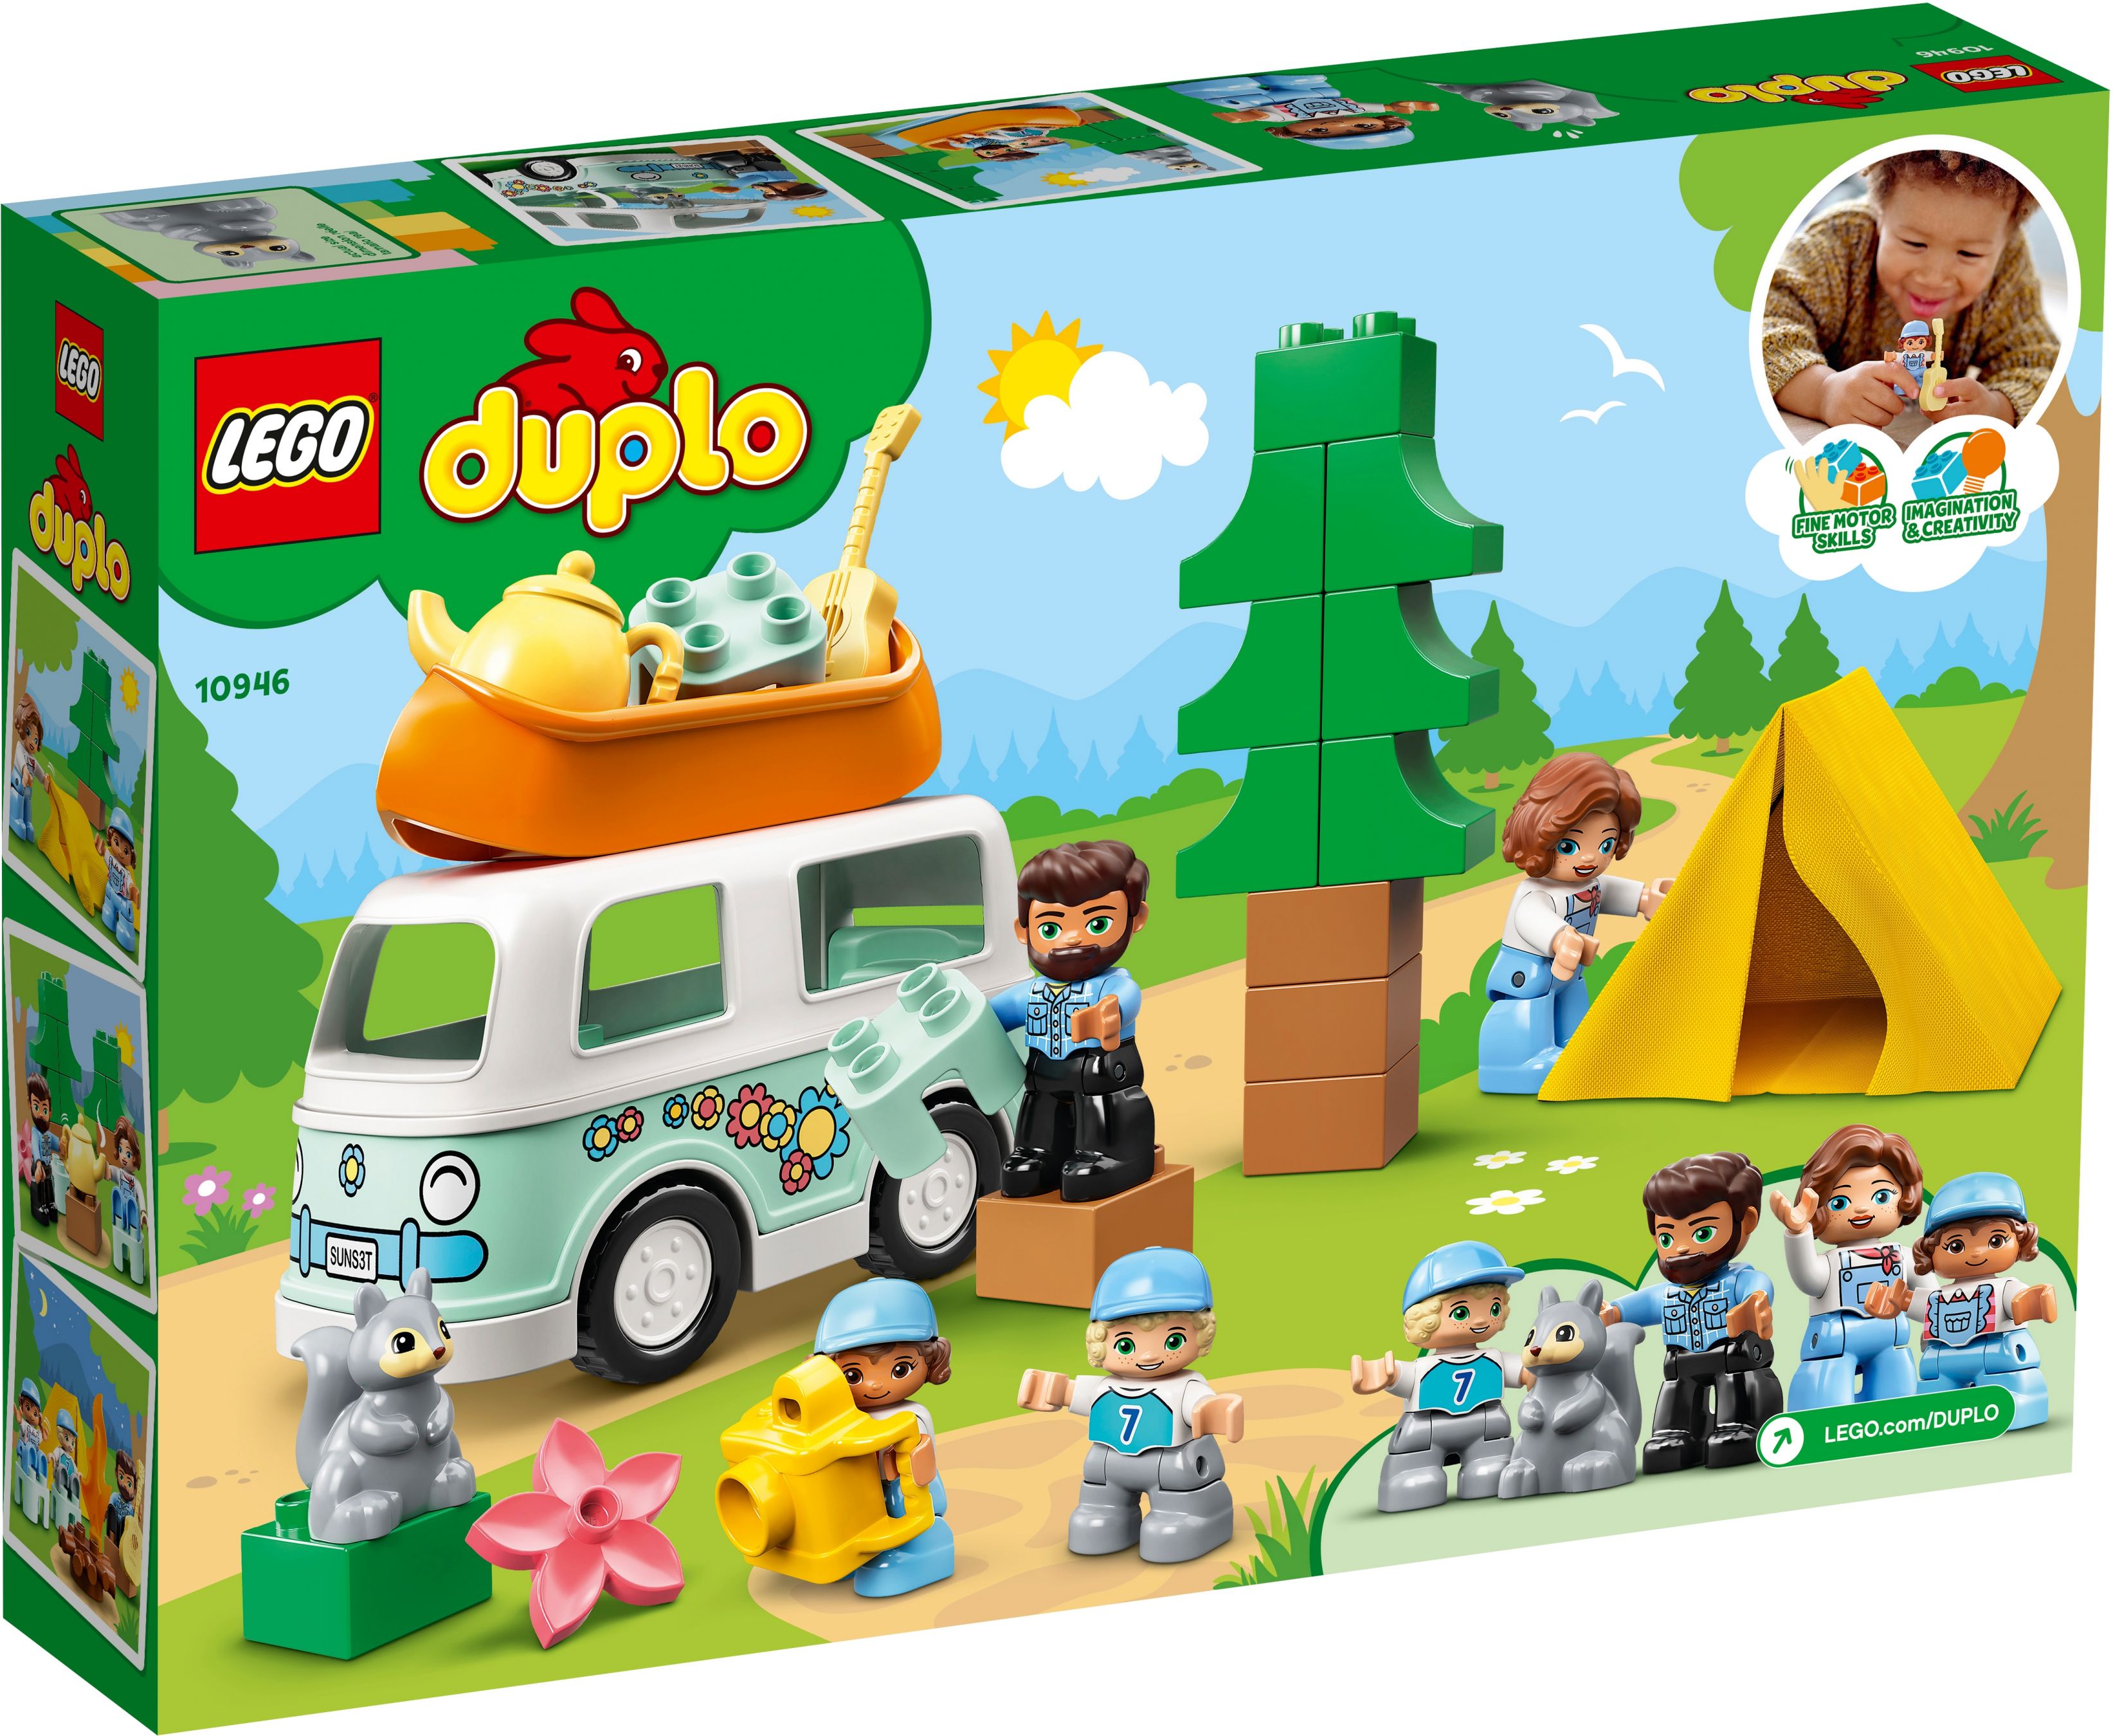 LEGO Duplo 10946 Familienabenteuer mit Campingbus LEGO_10946_alt10.jpg